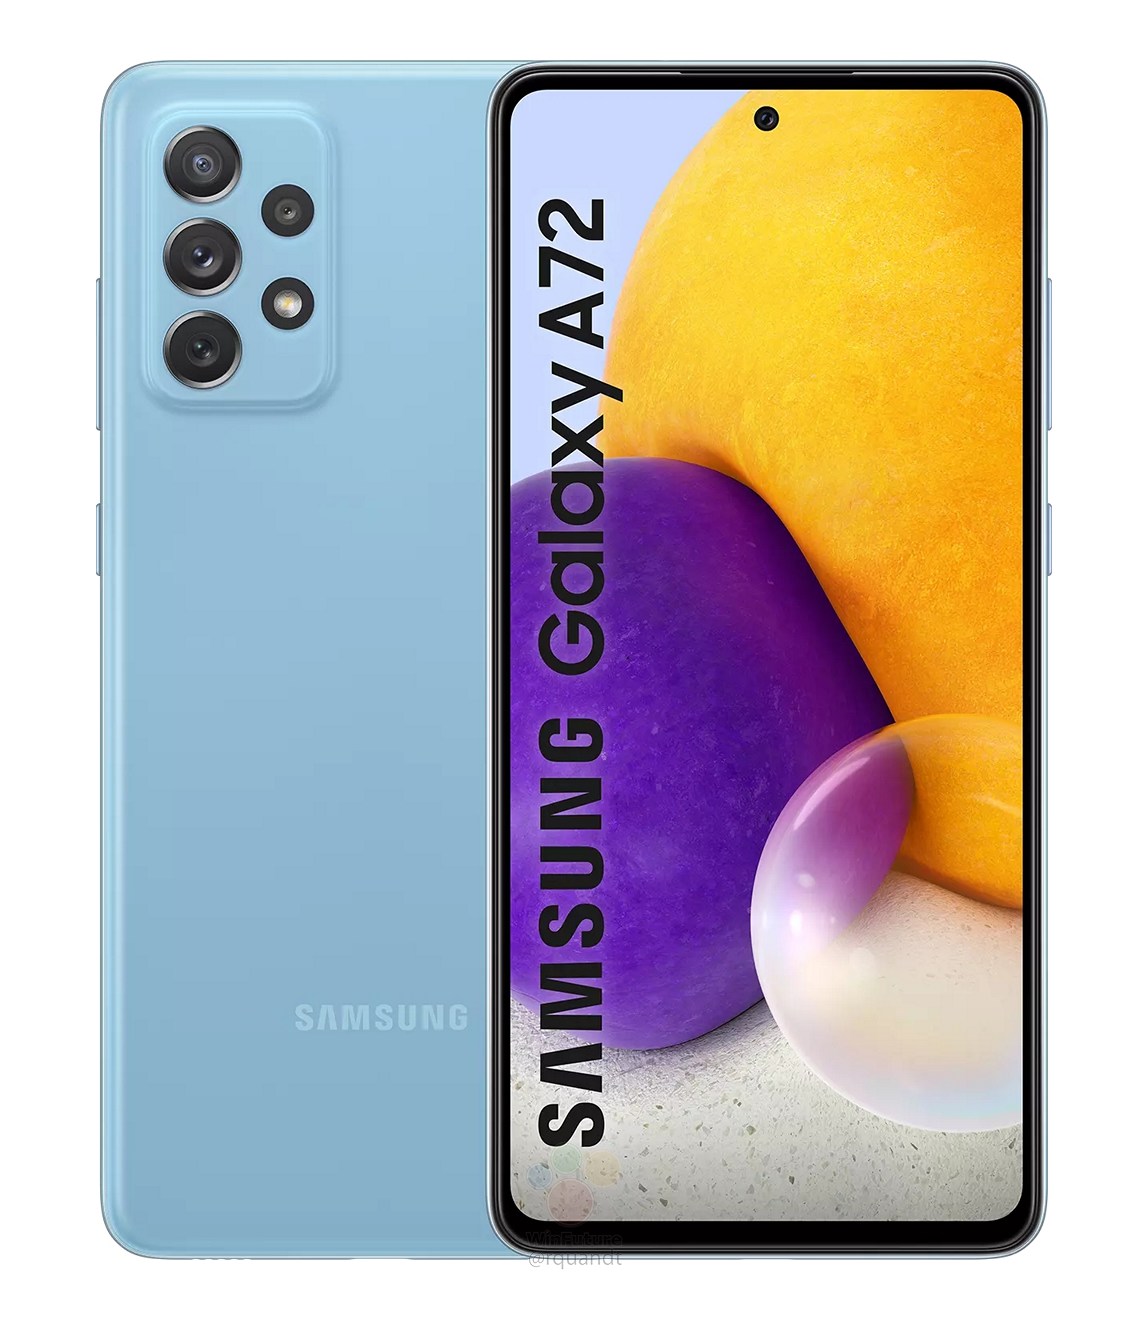 Samsung-Galaxy-A72-1613212795-0-0.jpg